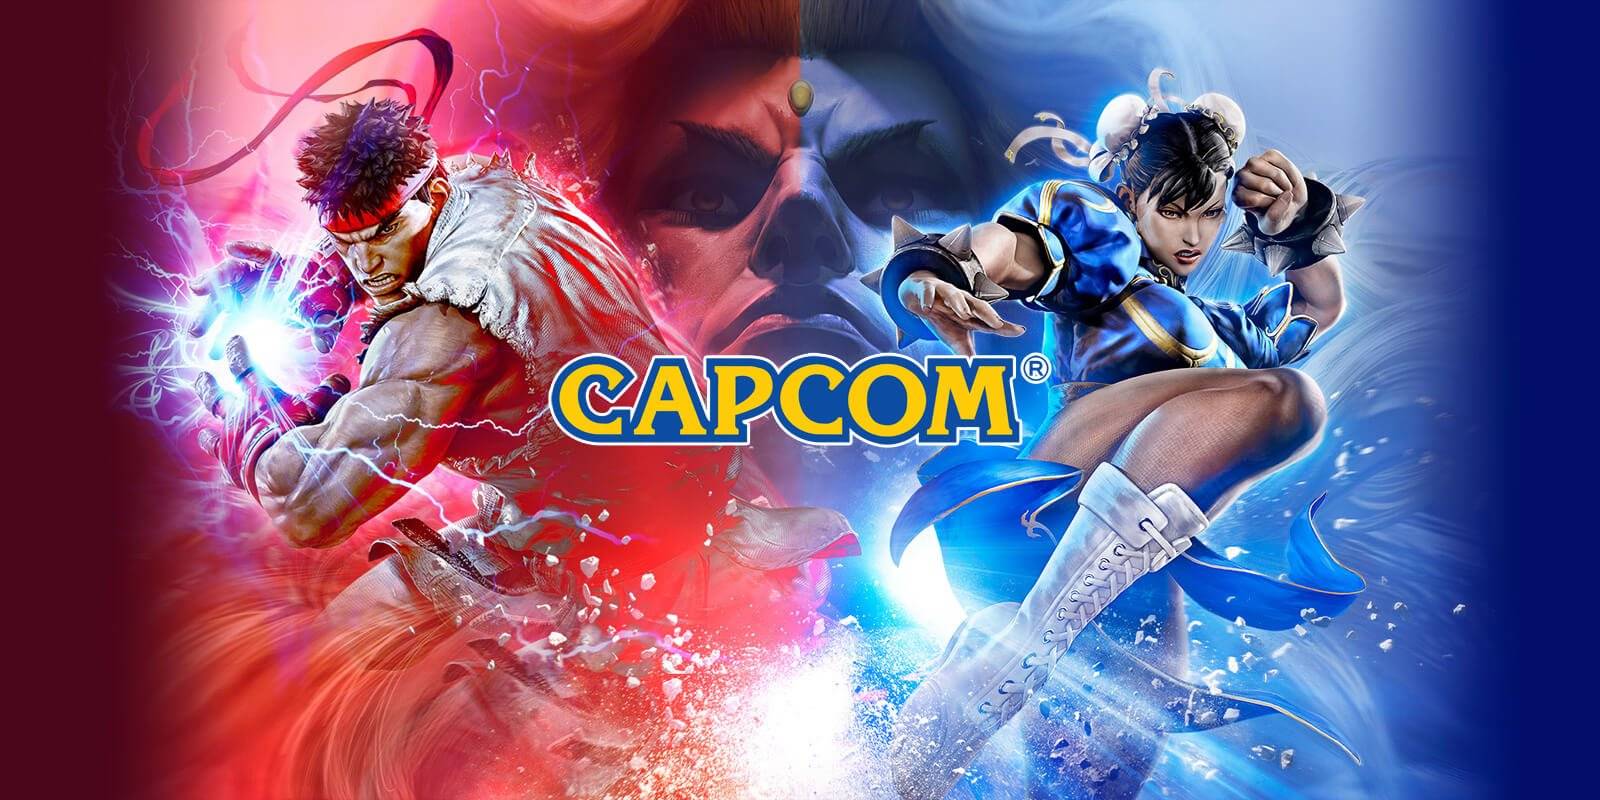 原创Capcom内部网络遭黑客攻击1T数据泄露，但称玩家不受影响